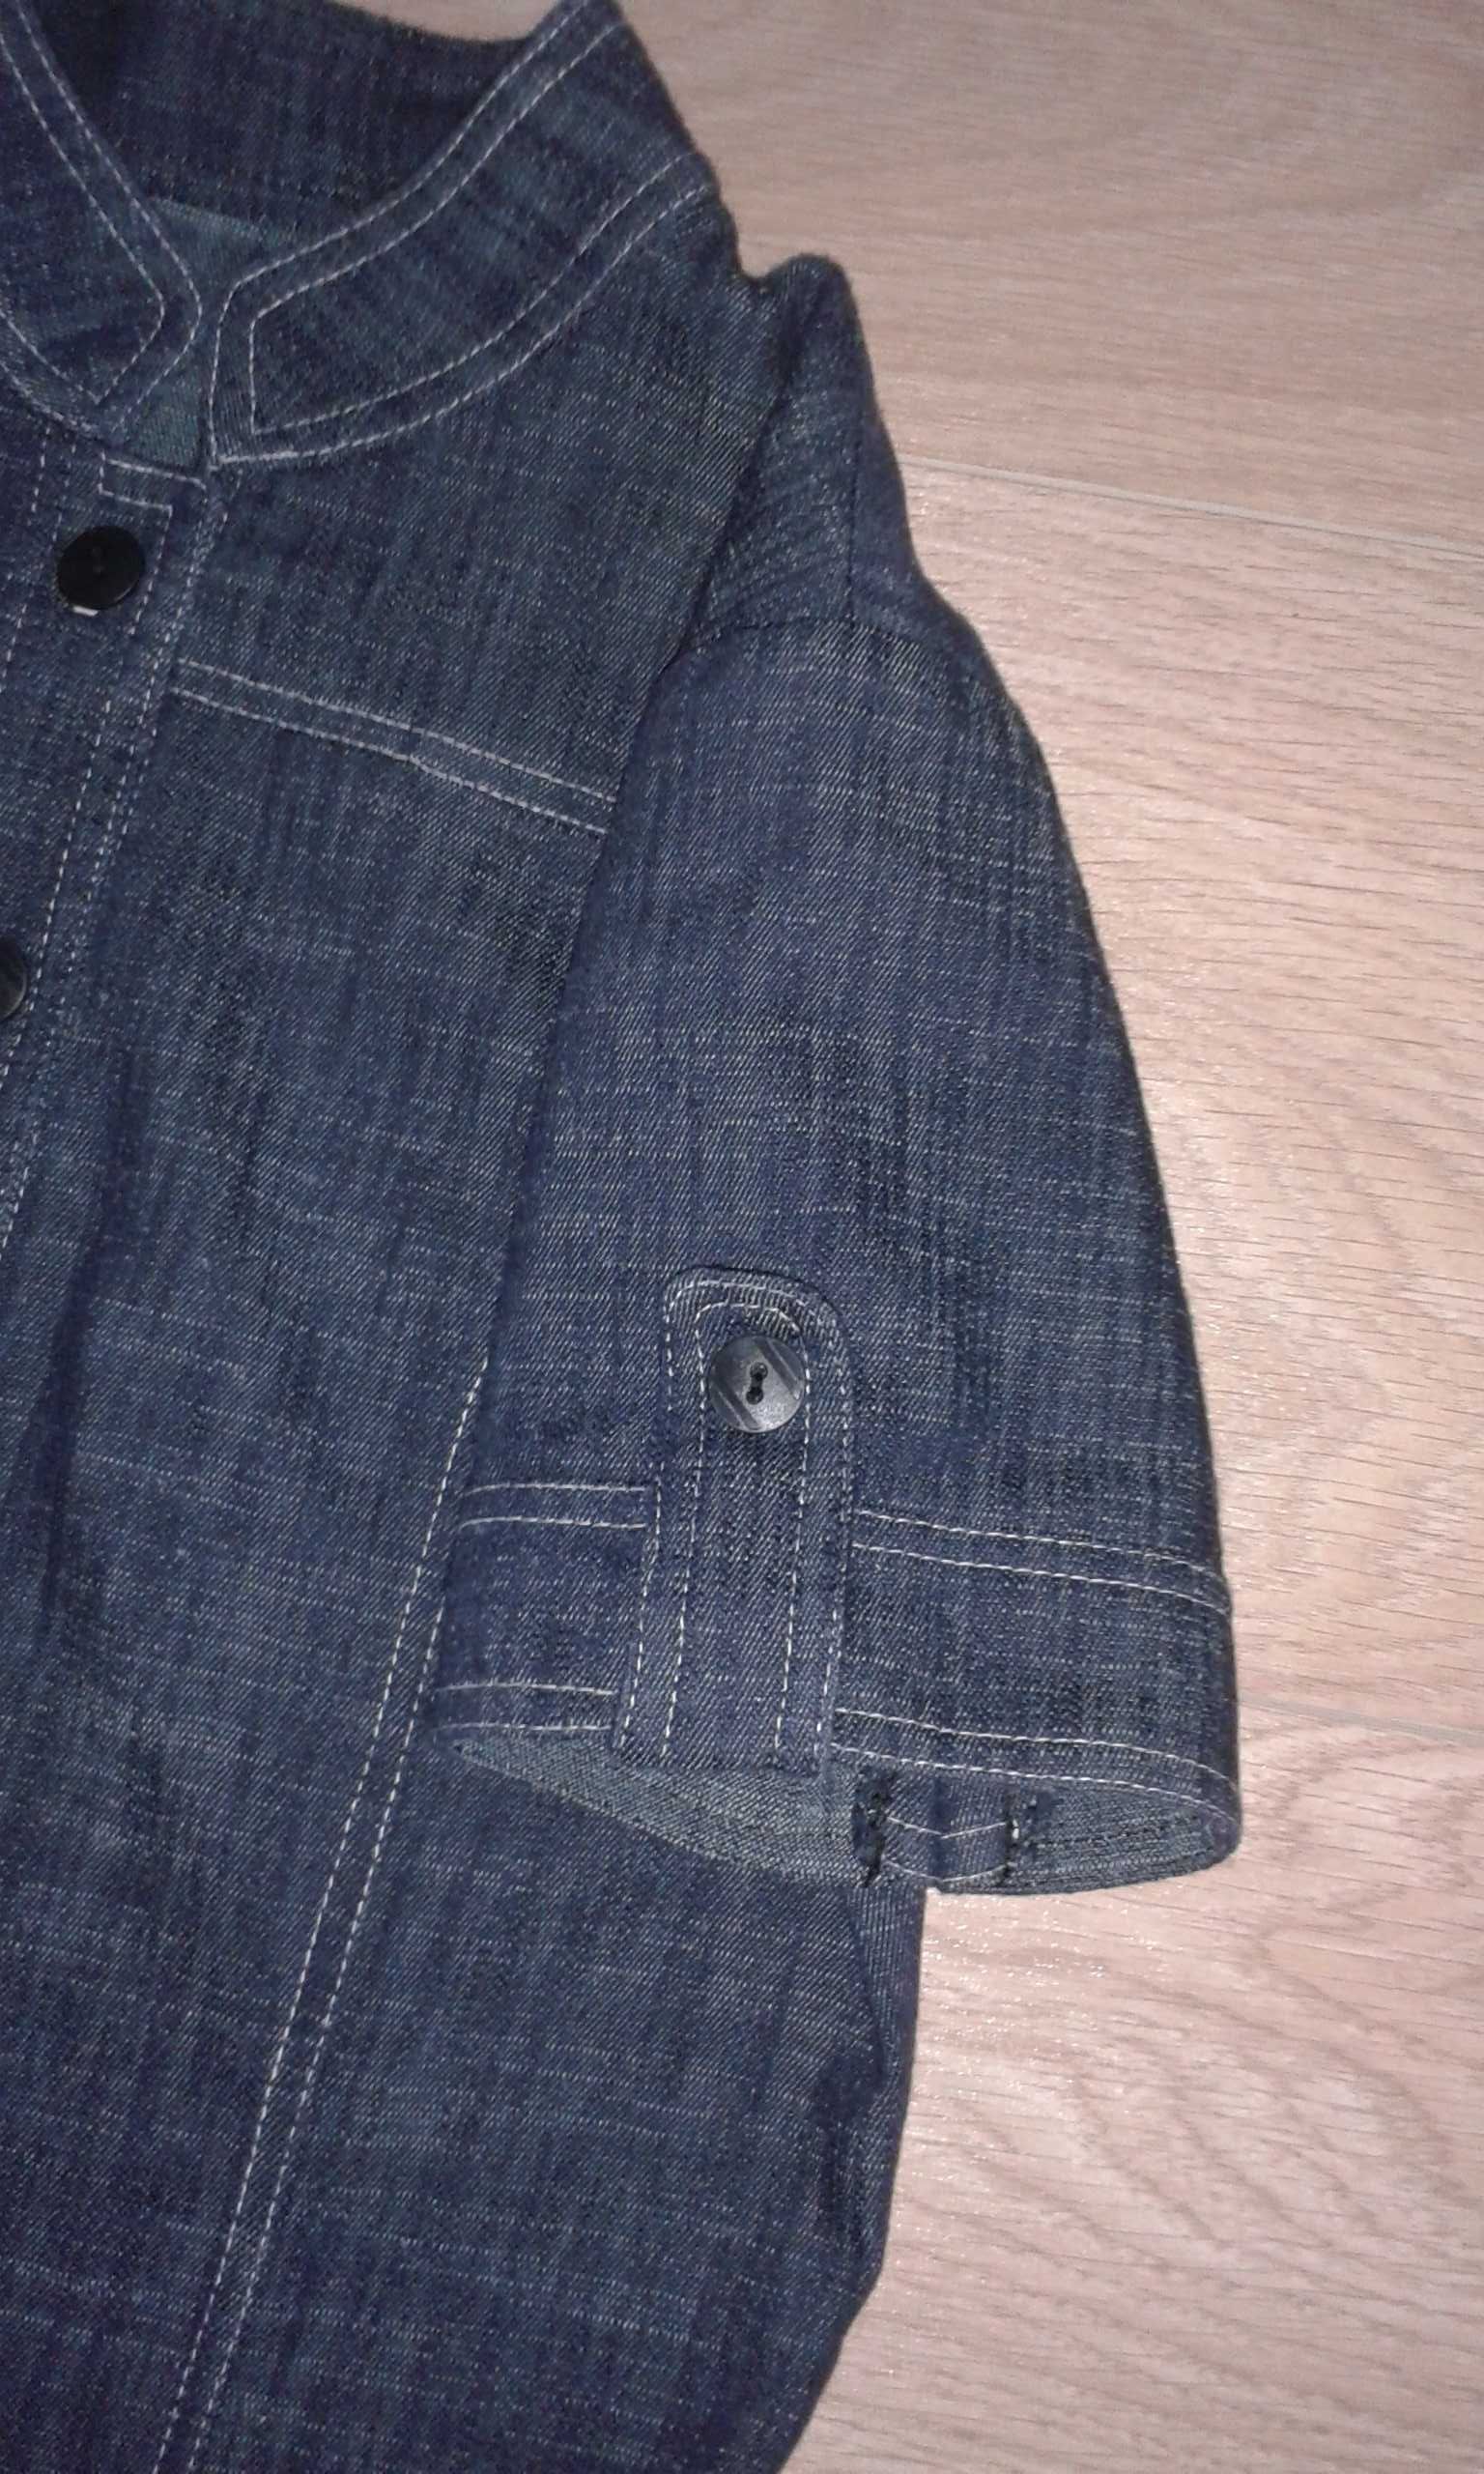 XS/S 36/38 Sukienka dżinsowa damska jeansowa tunika plisowana